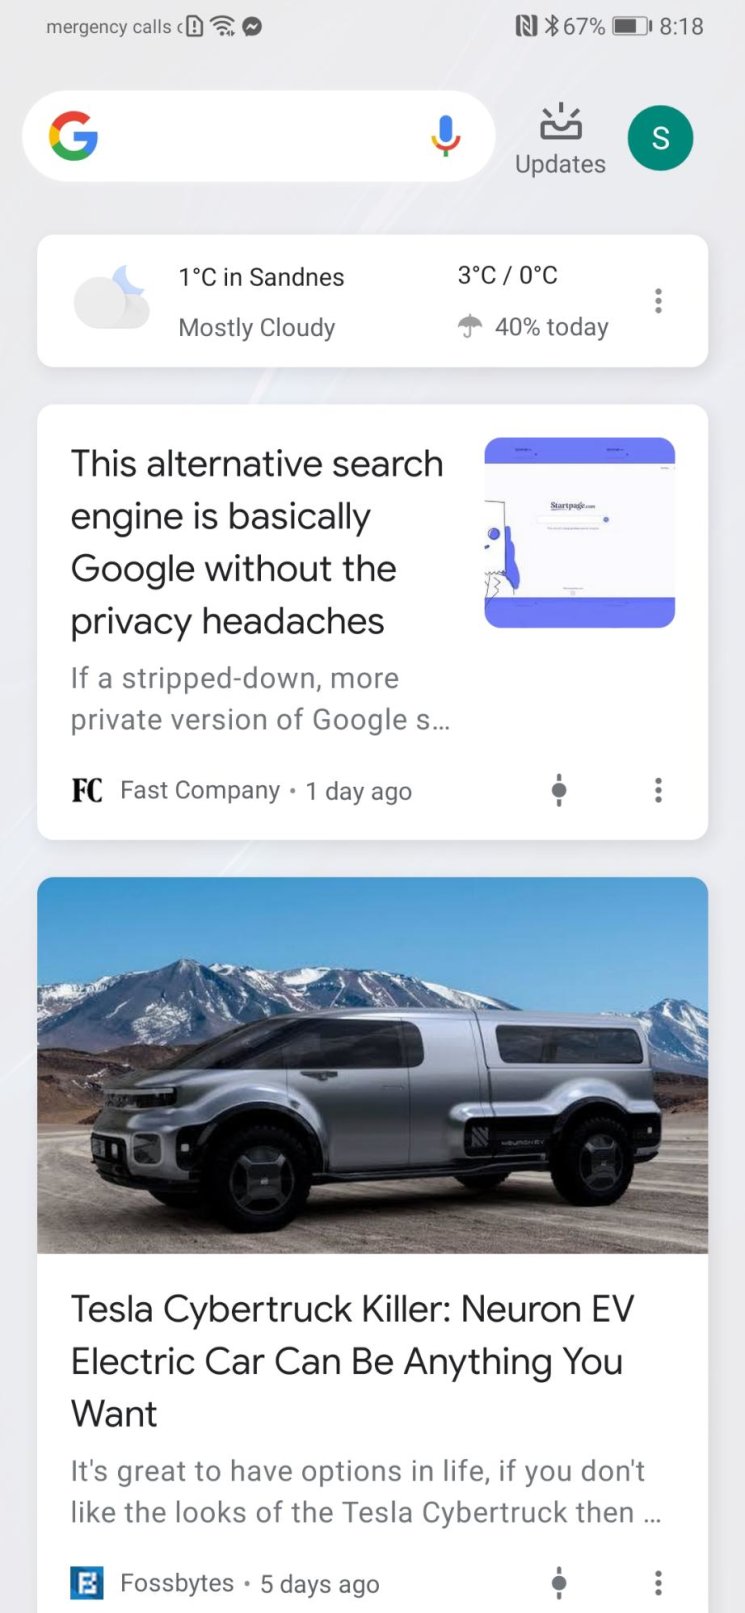 Google discover